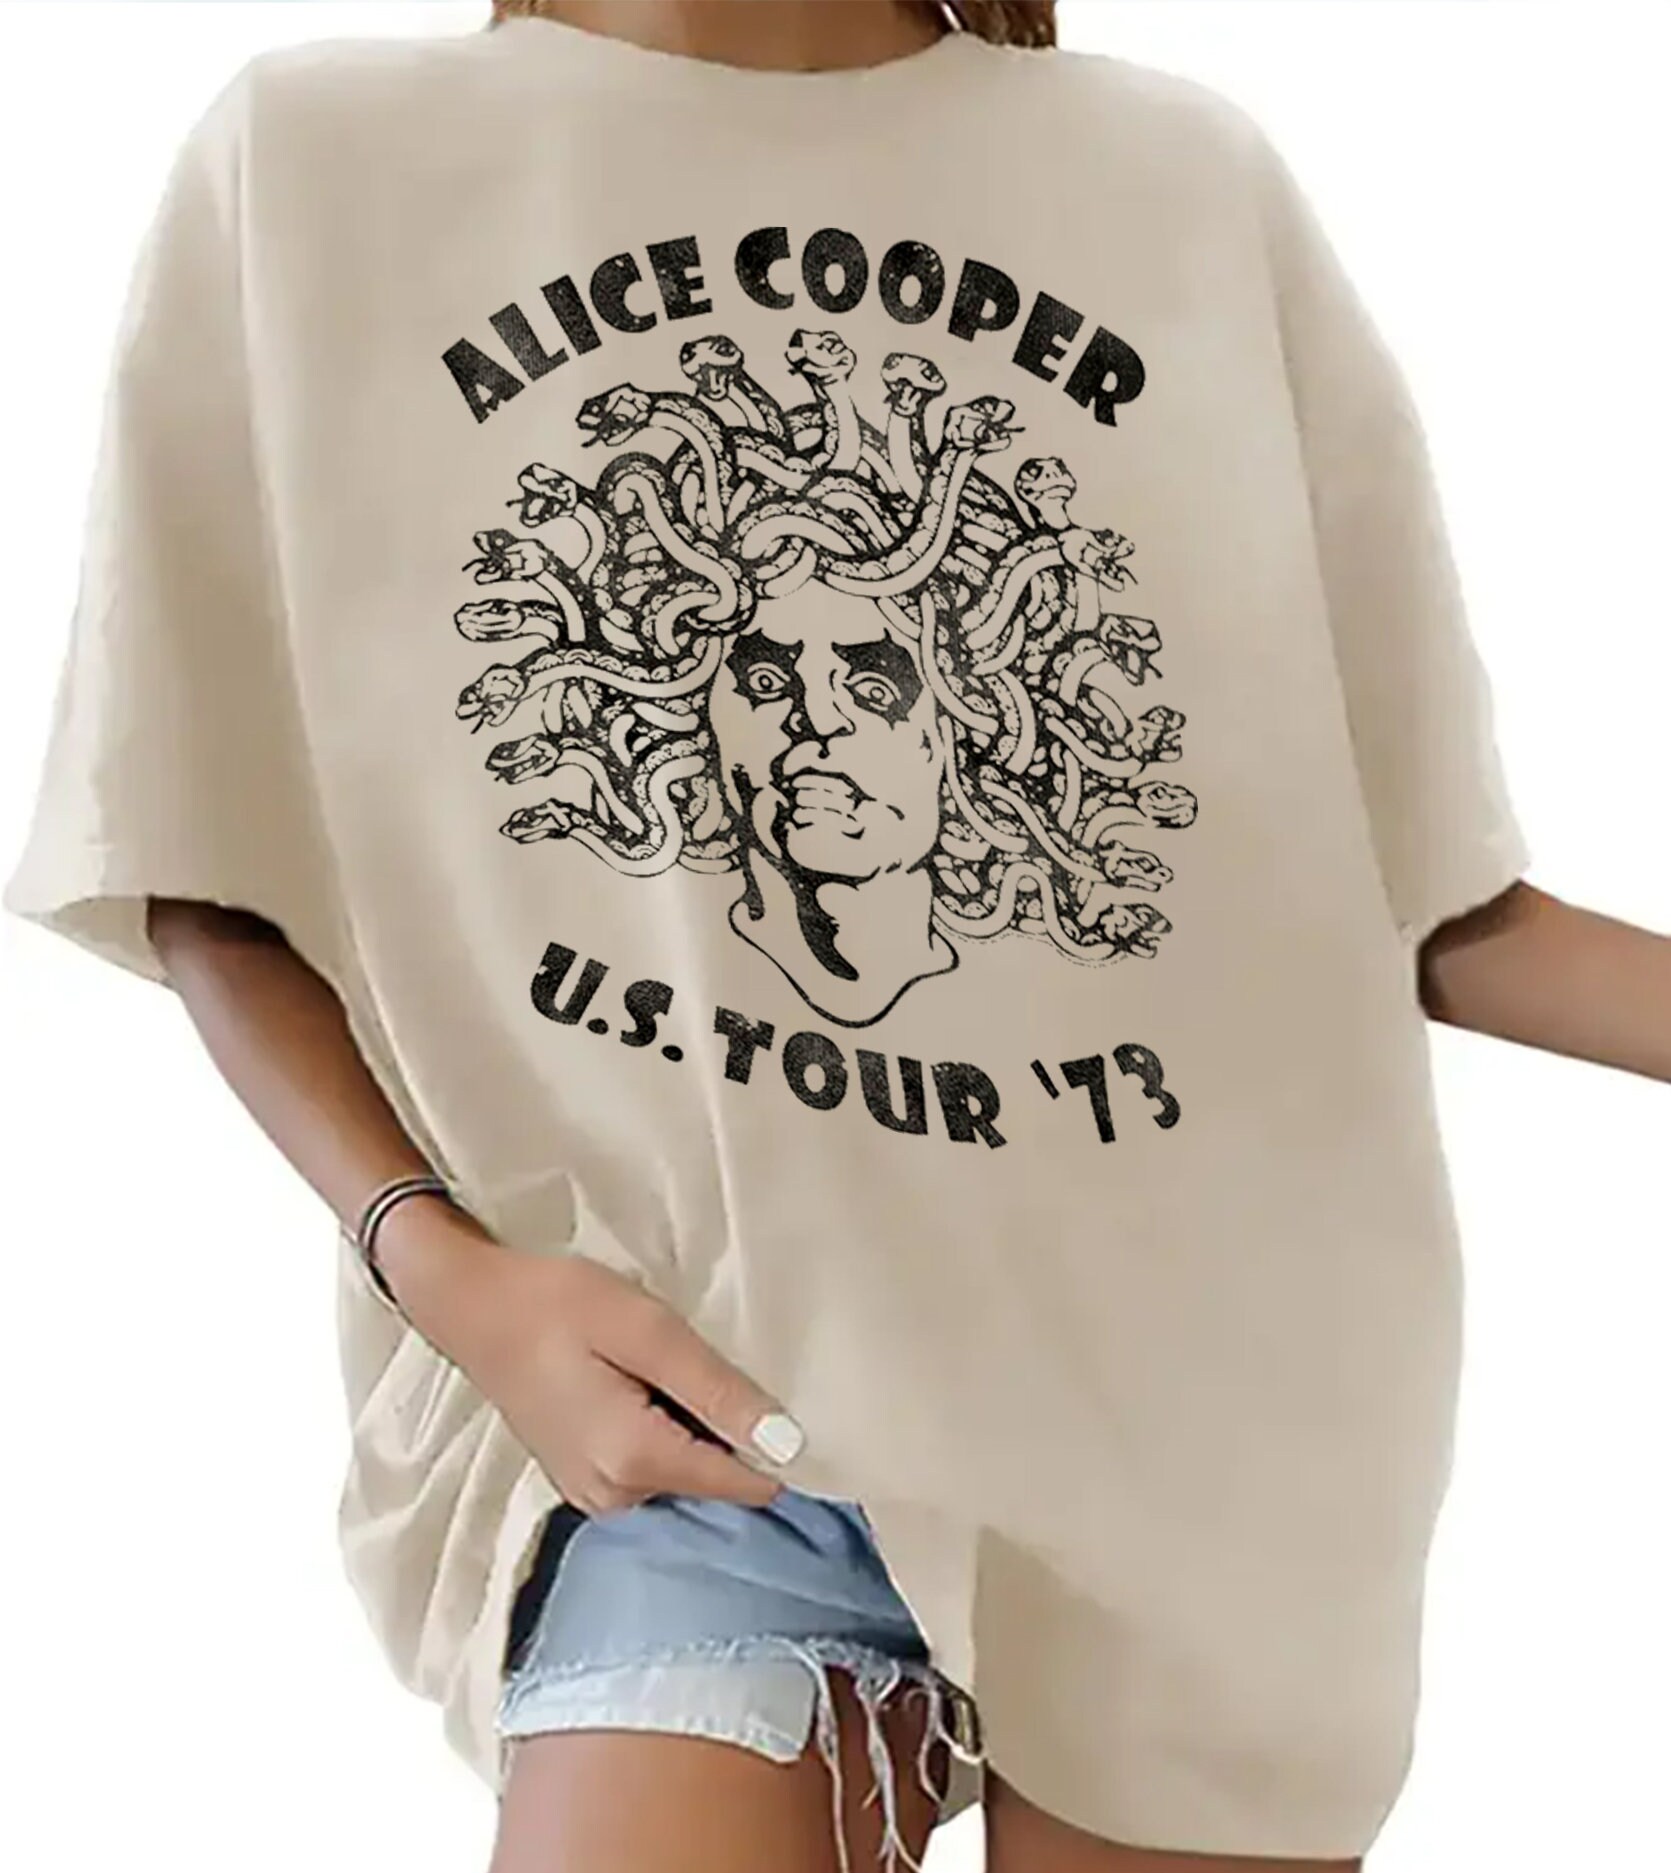 Alice Cooper Medusa USA Tour 1973 Unisex T Shirt Boxy Oversized Tee